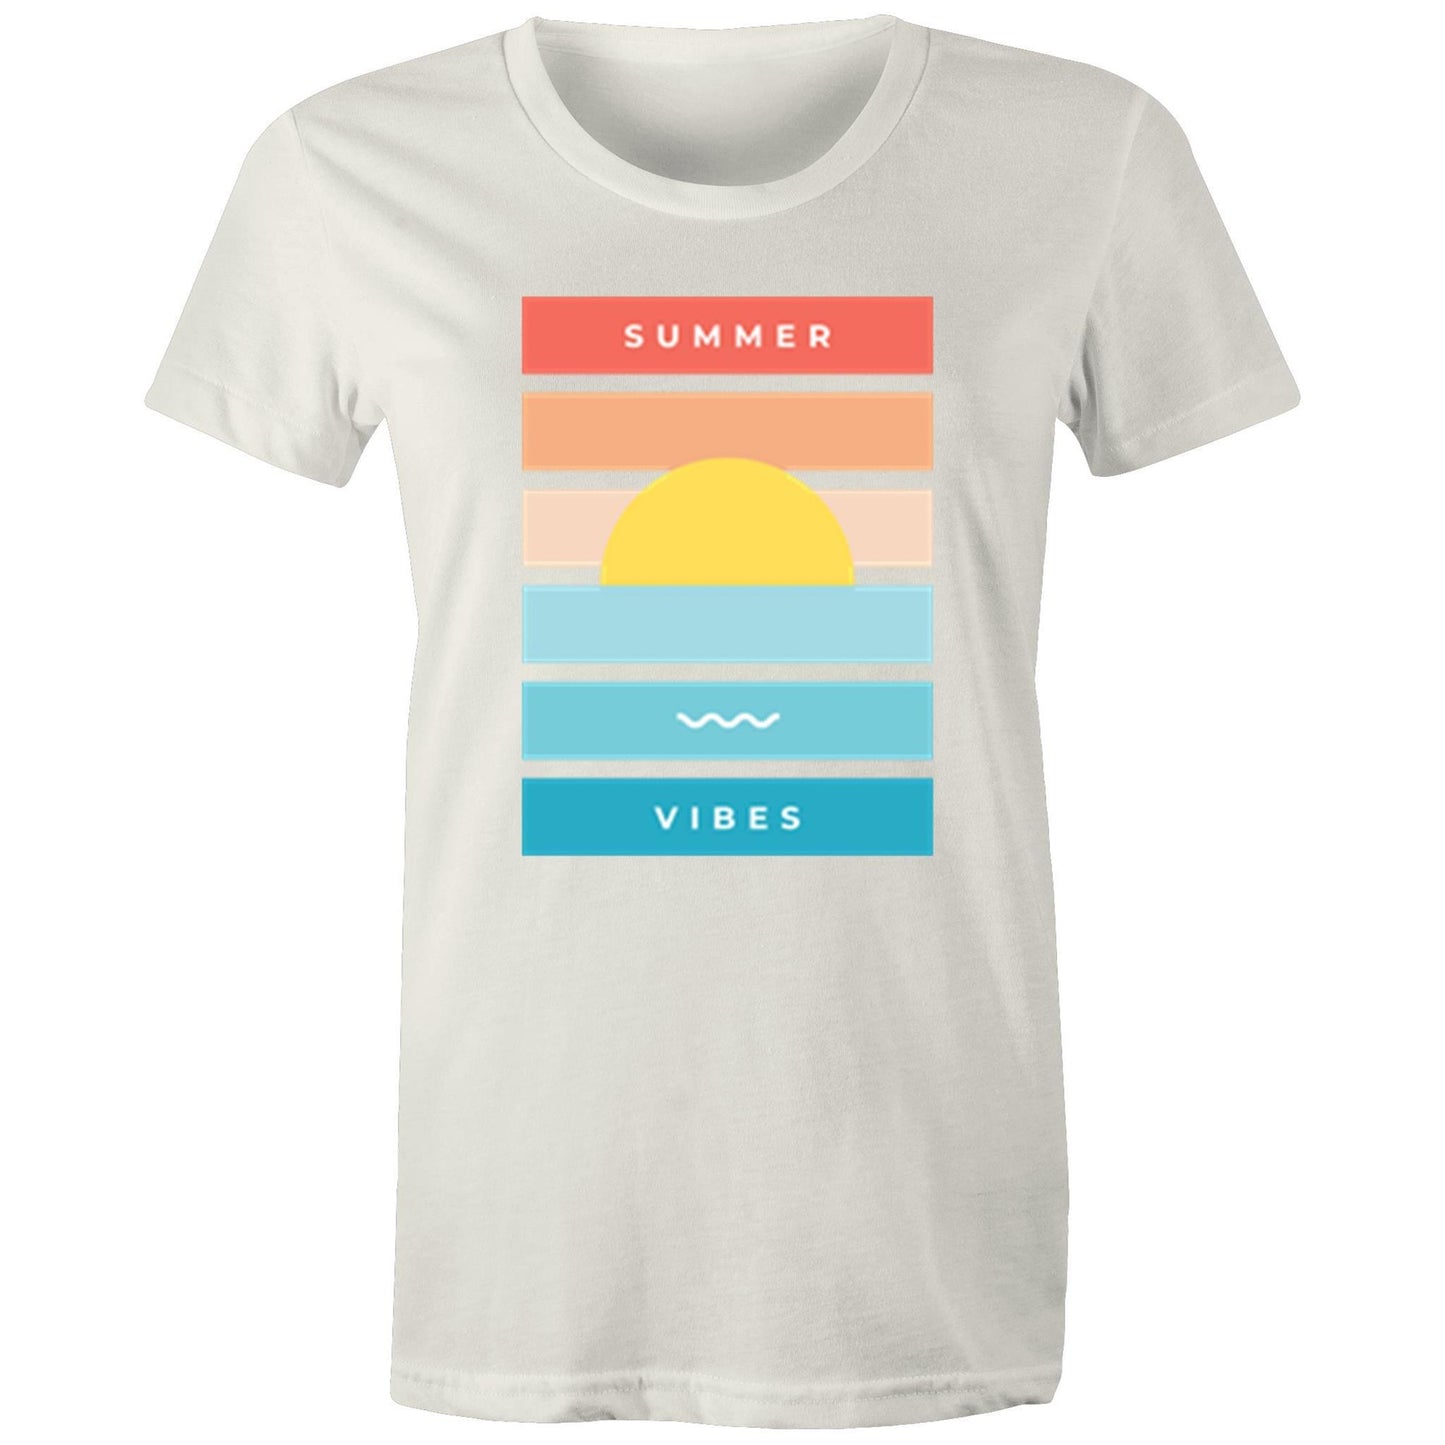 Summer Vibes - Women's T-shirt Natural Womens T-shirt Retro Summer Womens